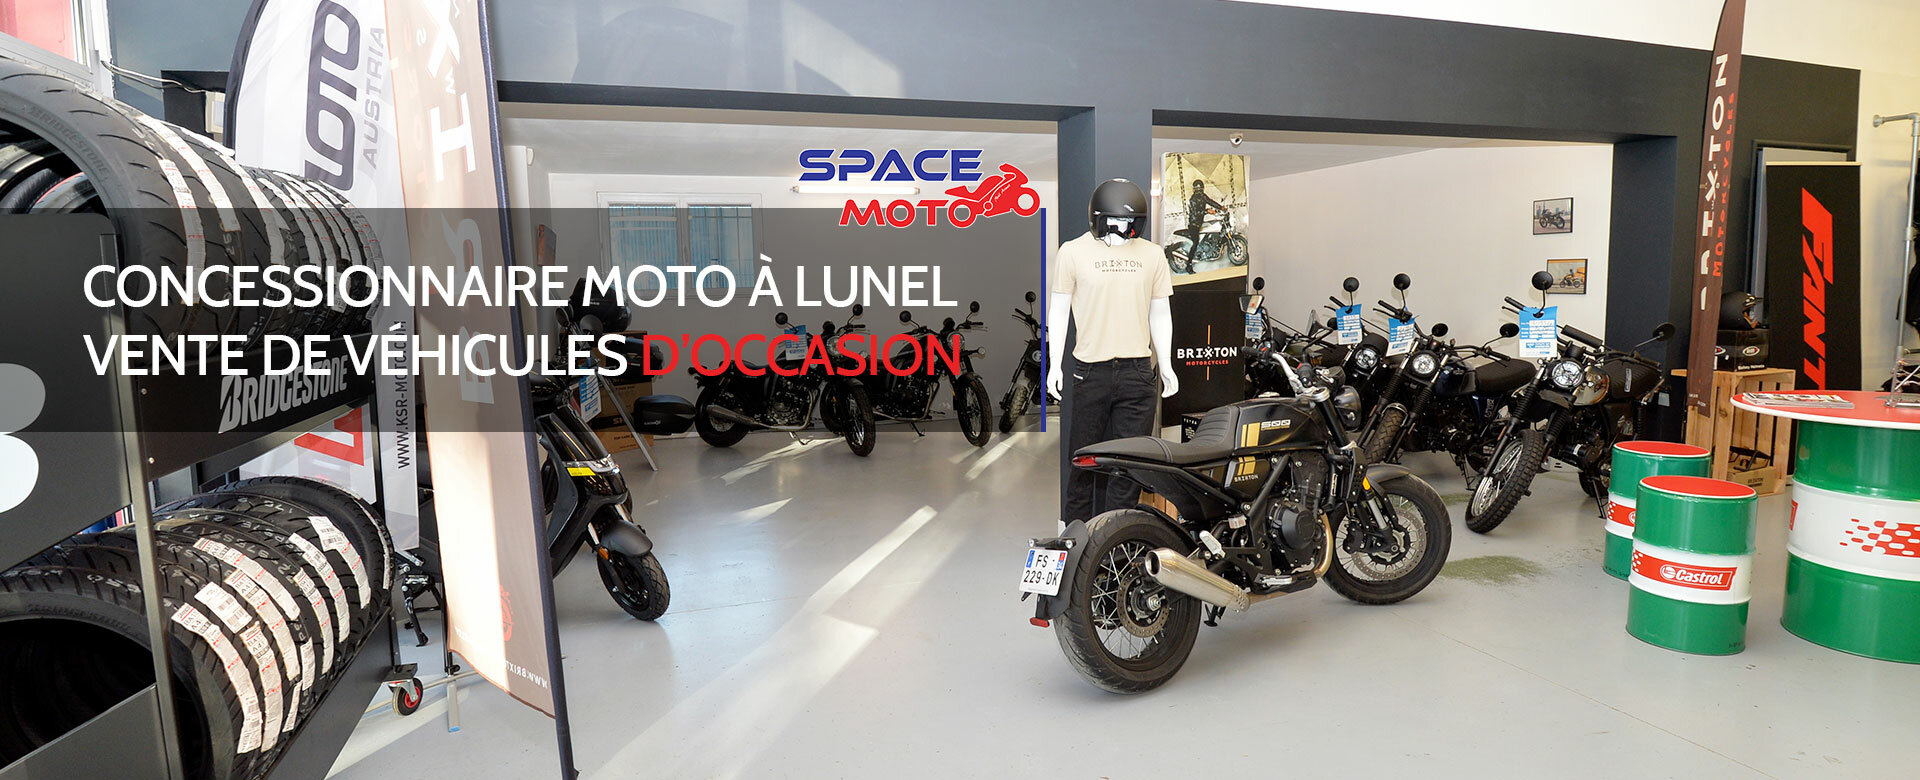 Accueil - Space Moto concessionnaire moto - Secteur Lunel, Nîmes